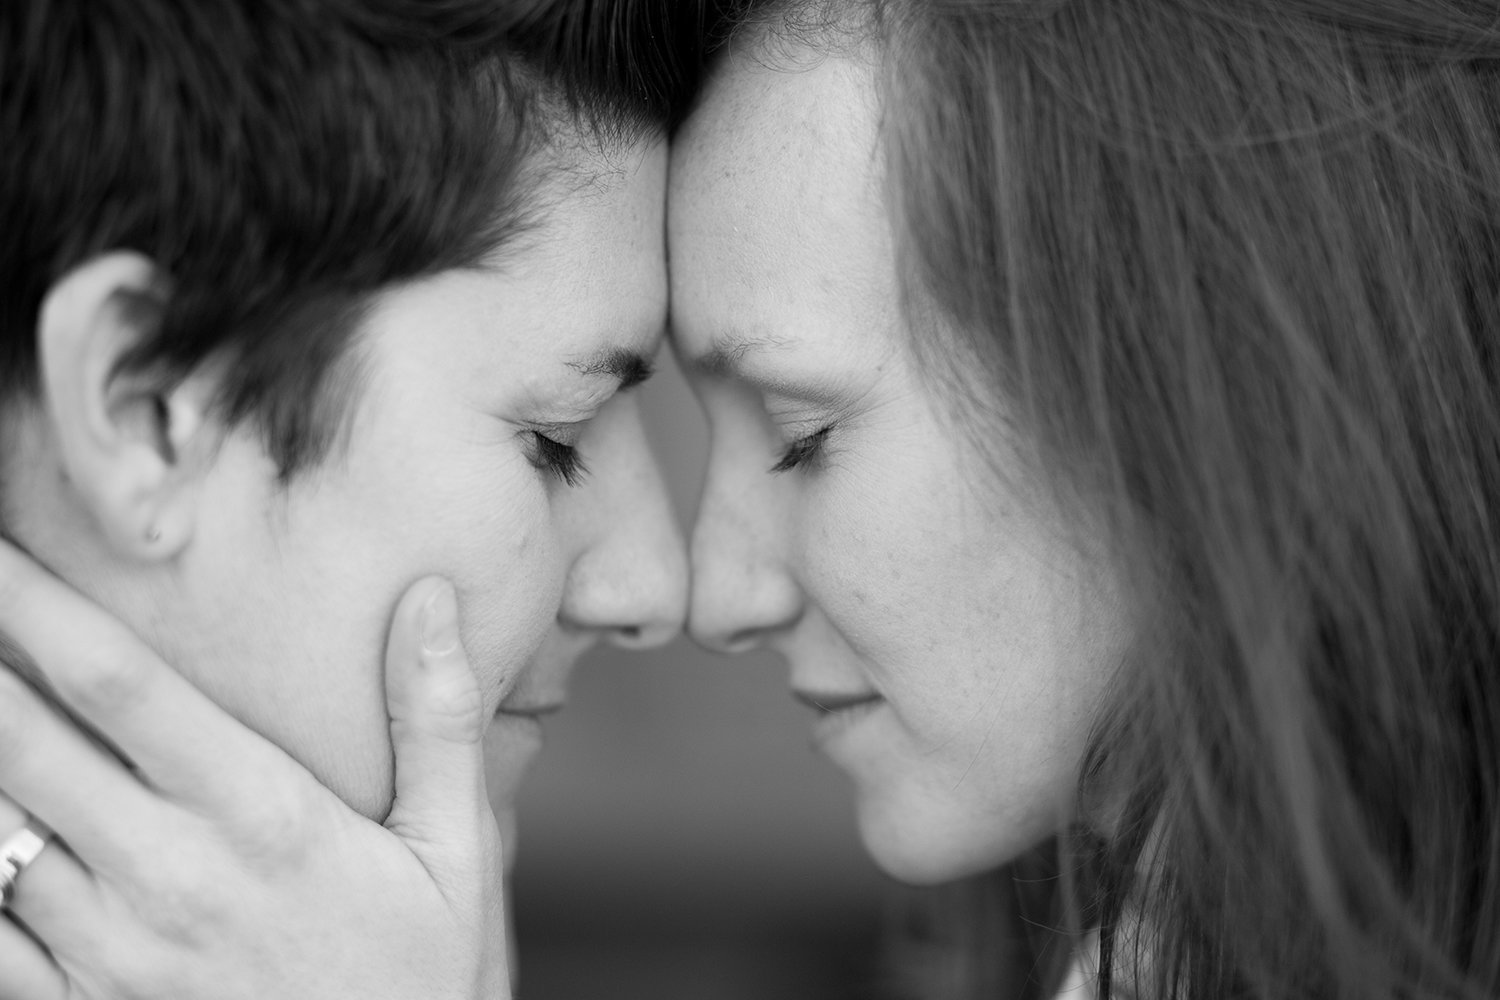 Romantic closeup portrait of lesbian couple